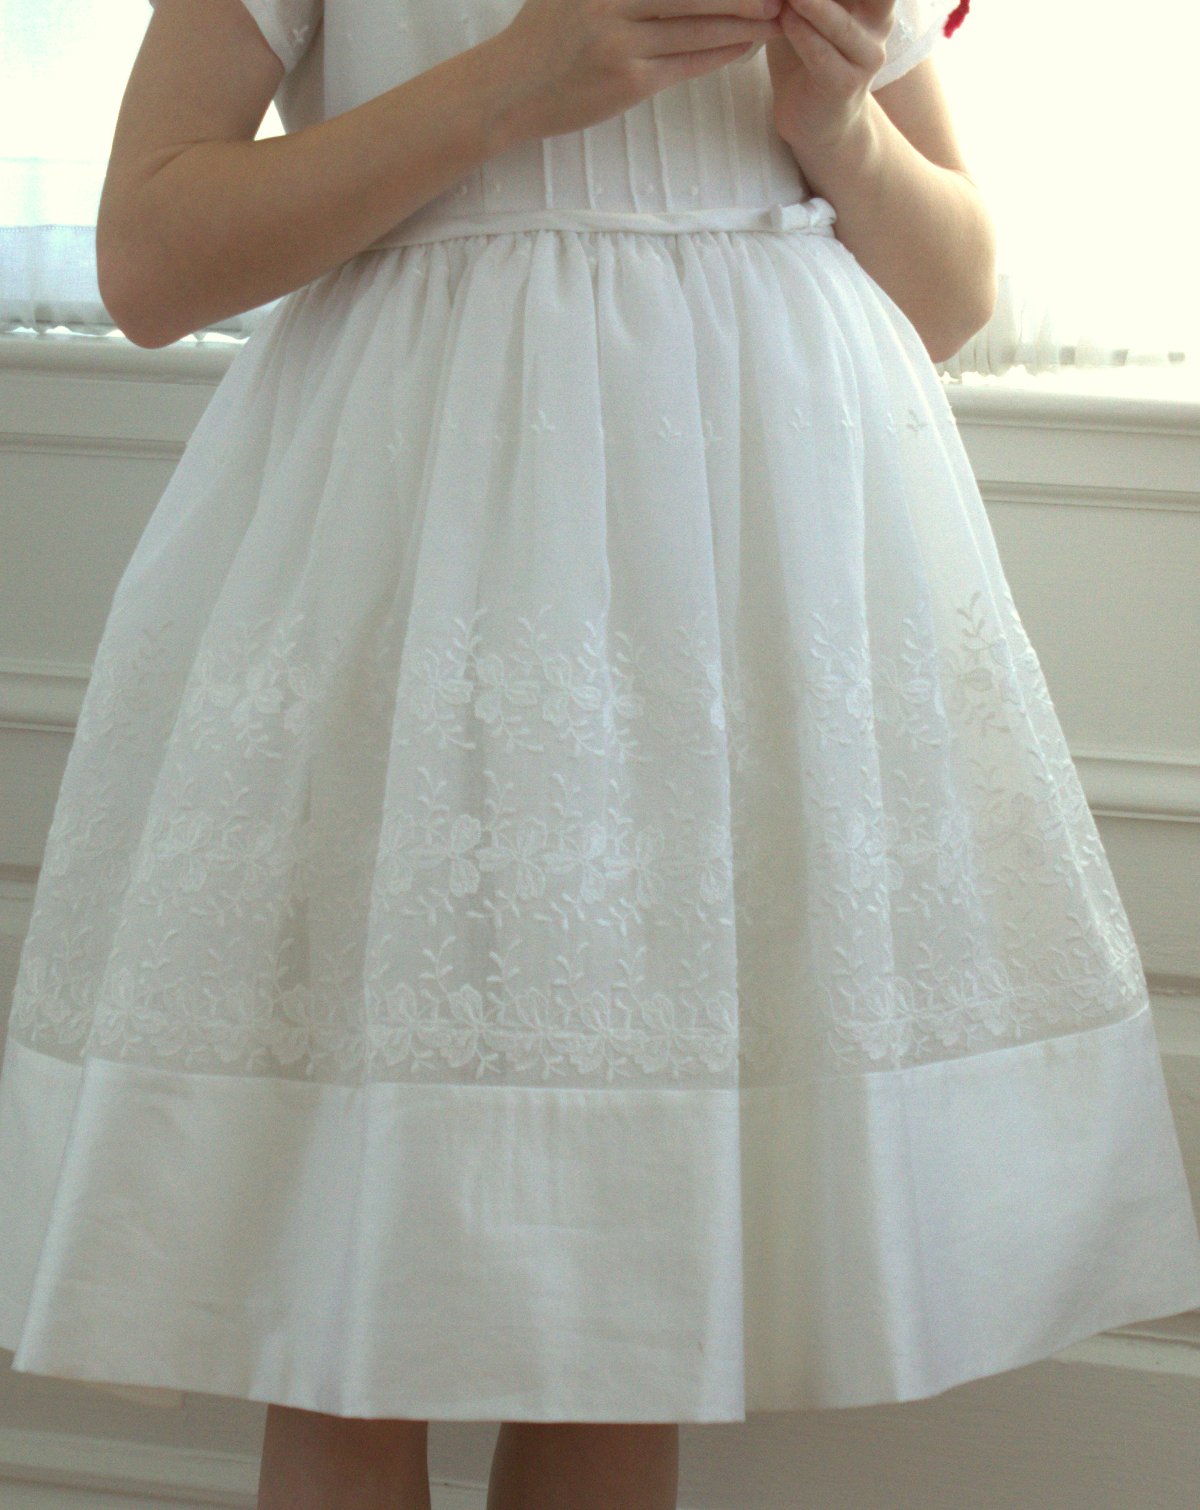 Girls in White Dresses | Blog | Oliver + S